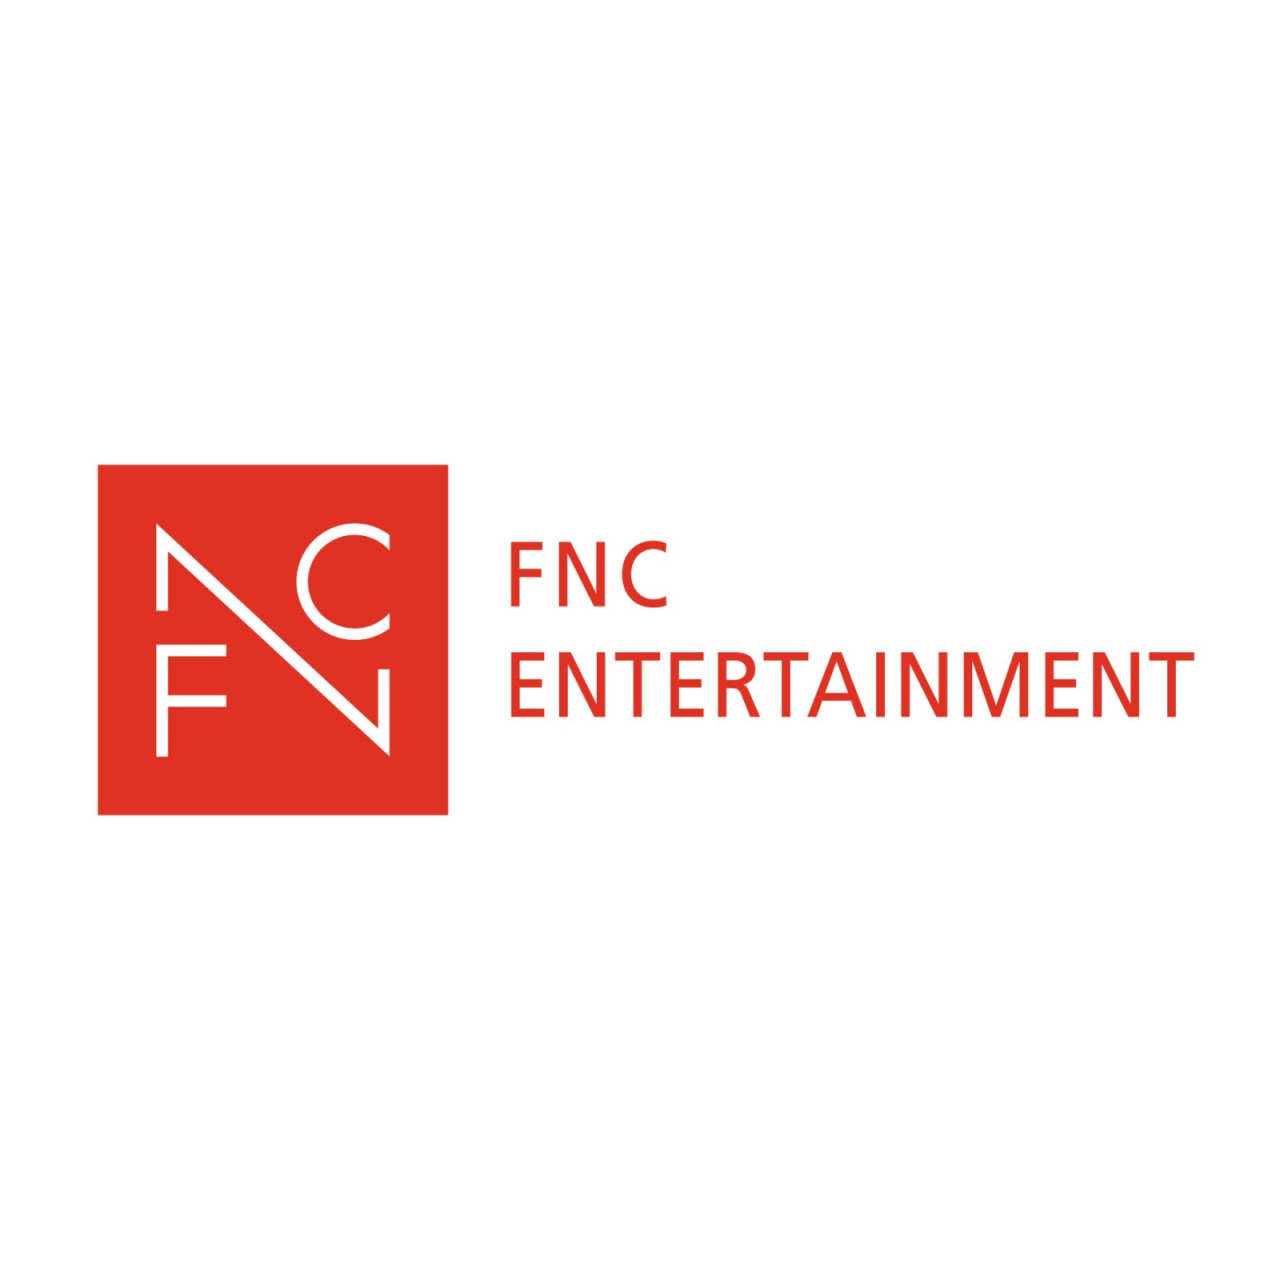 (FNC Entertainment)